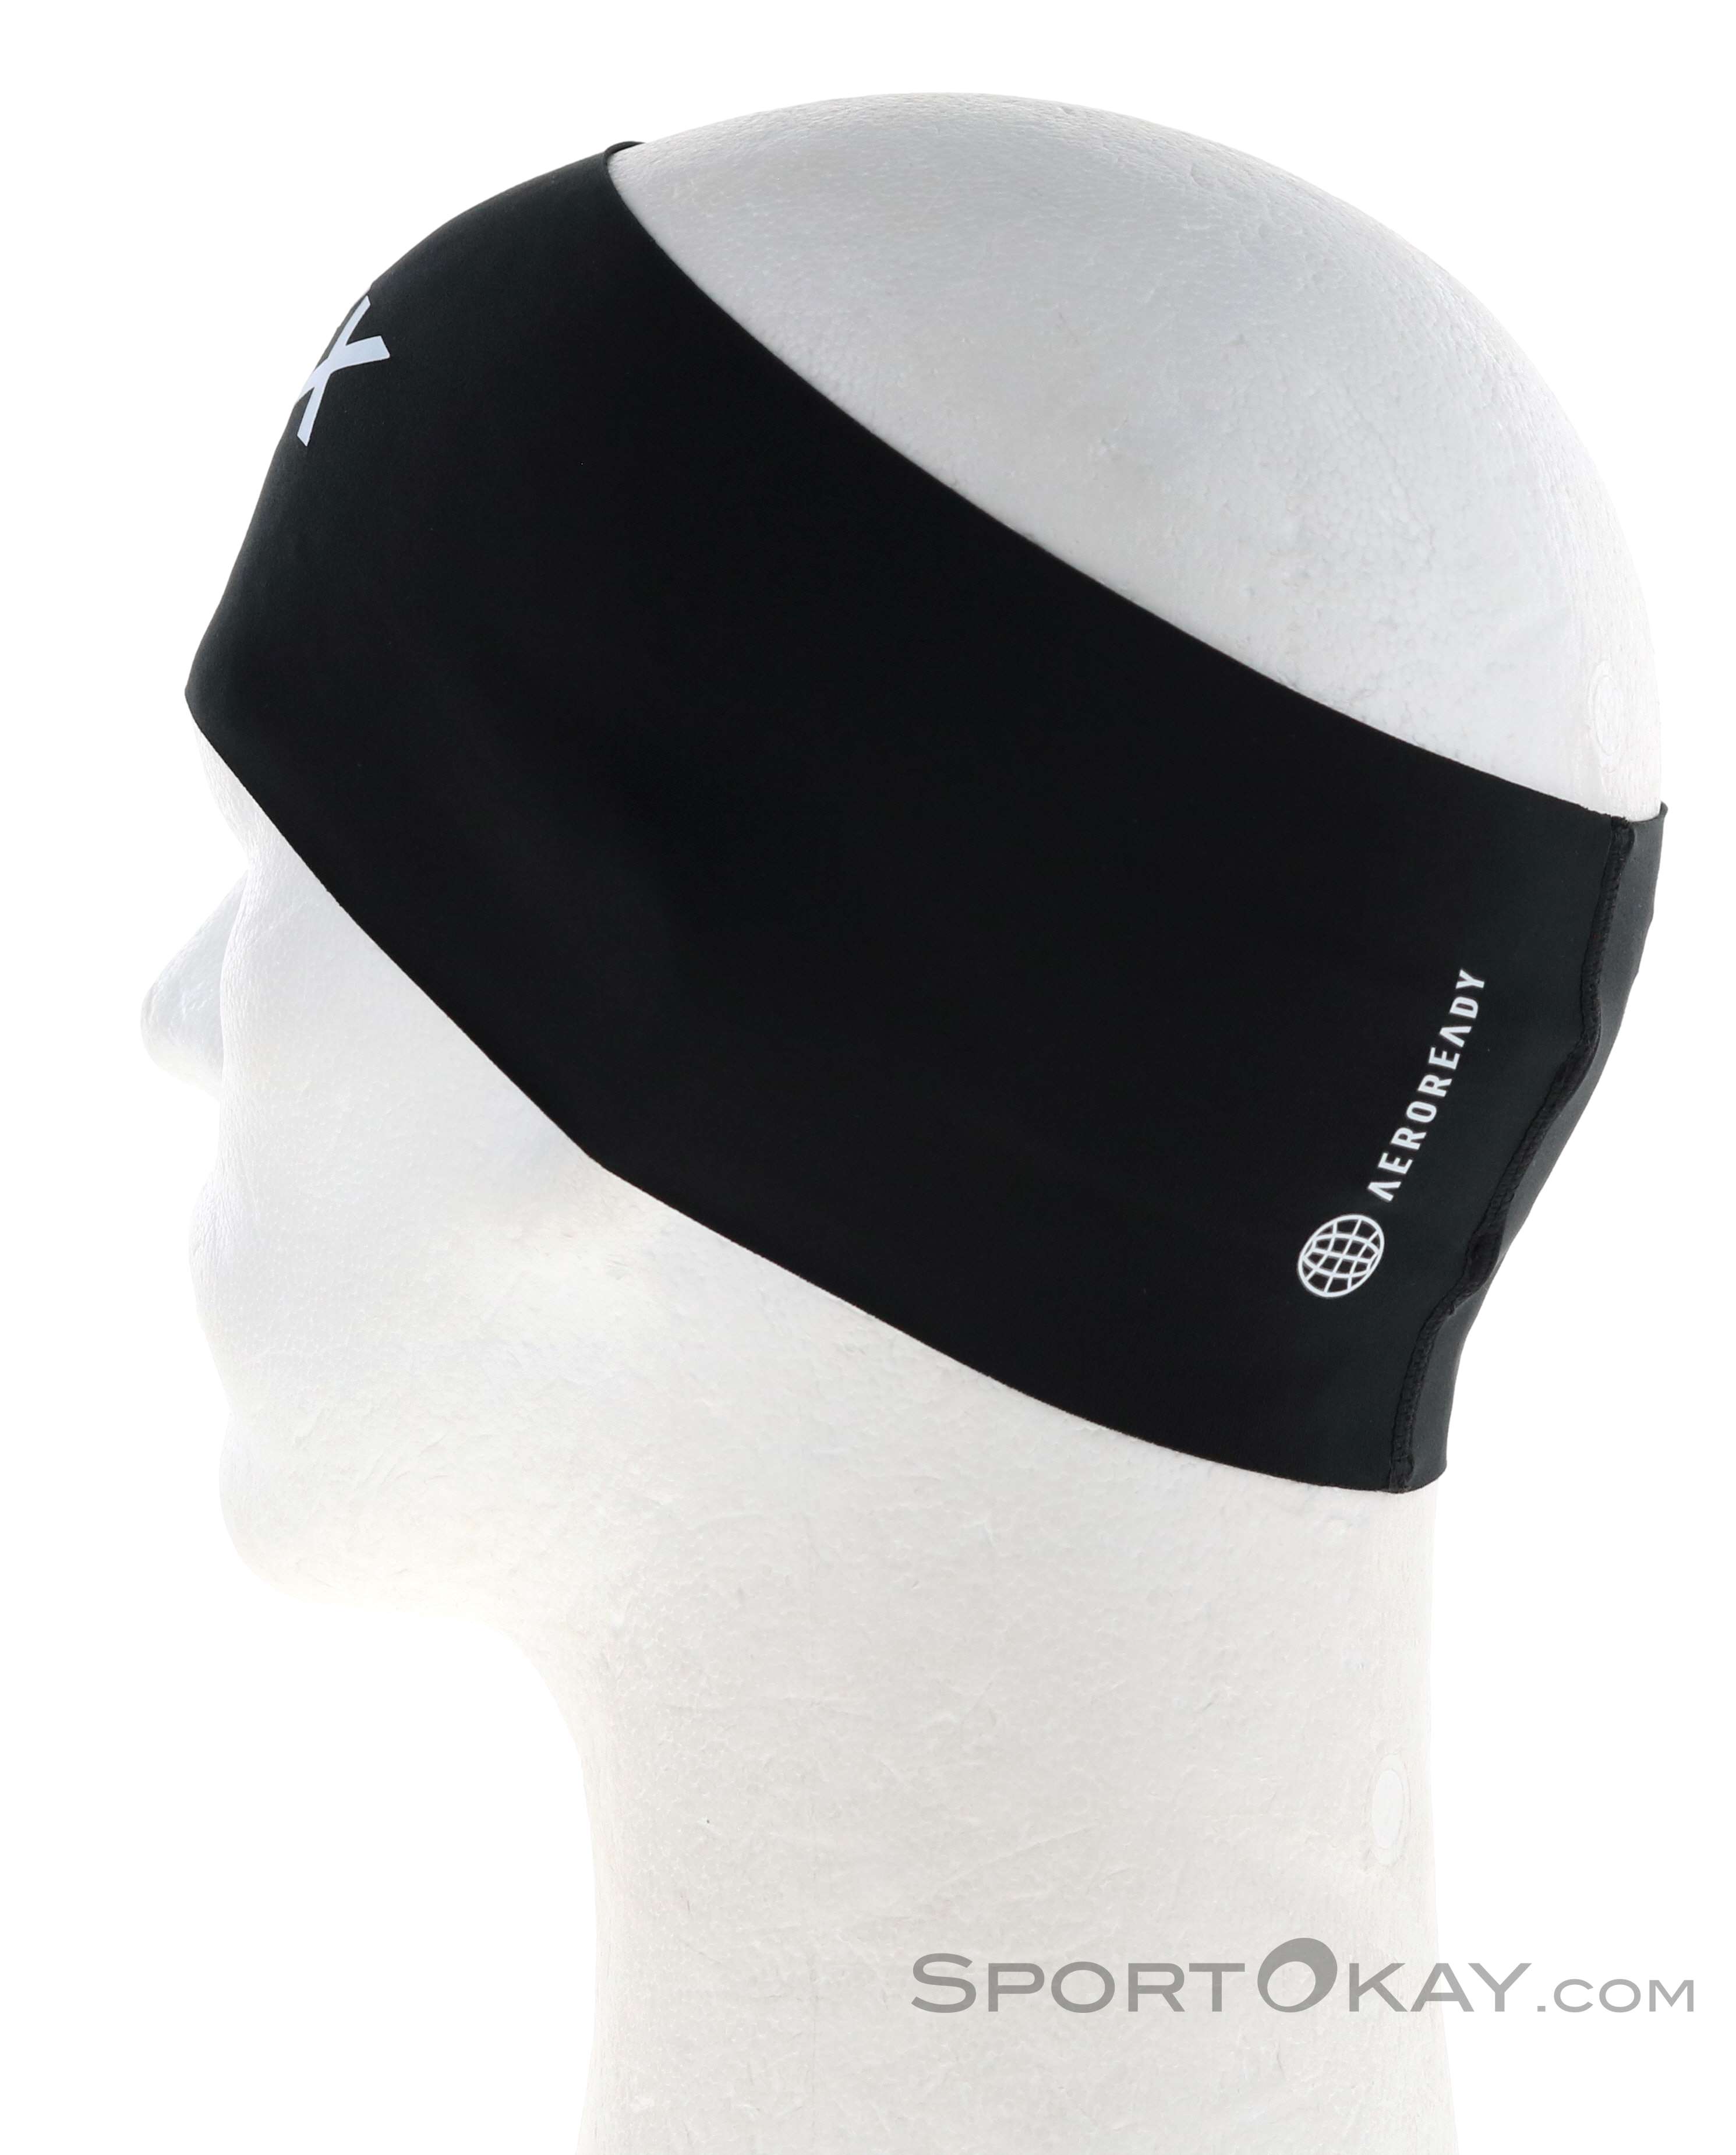 Mützen Headband Terrex Alle - adidas - Stirnbänder Outdoorbekleidung Stirnband & Outdoor - -